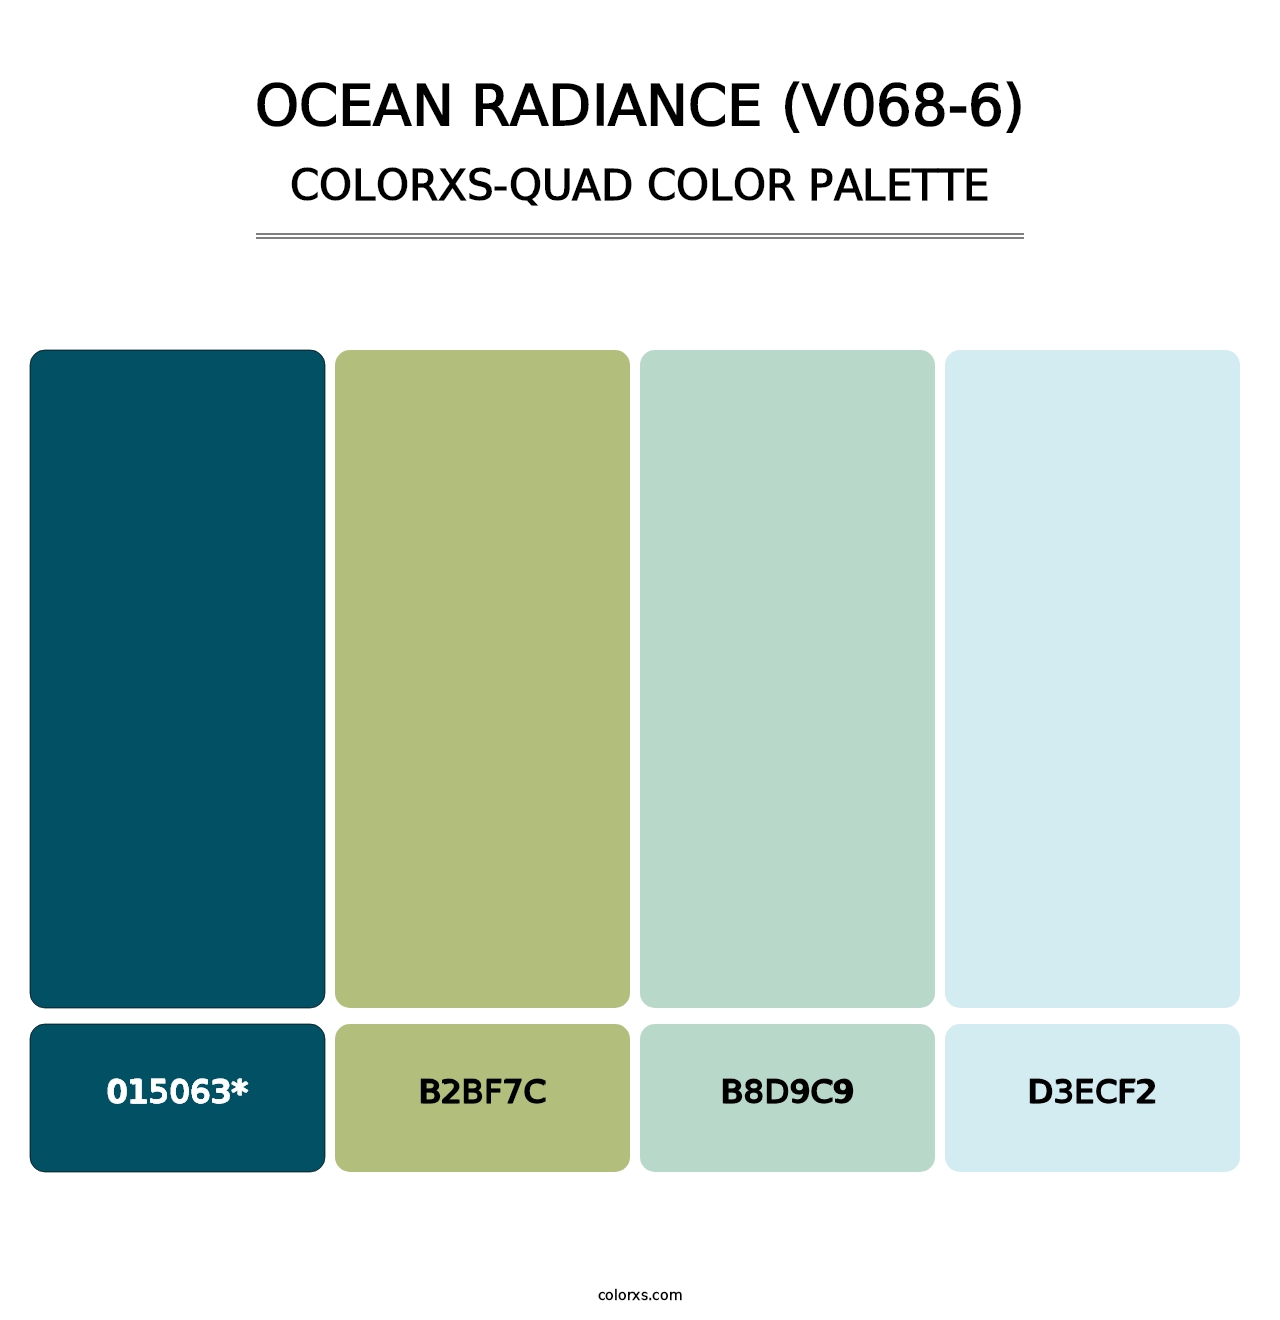 Ocean Radiance (V068-6) - Colorxs Quad Palette